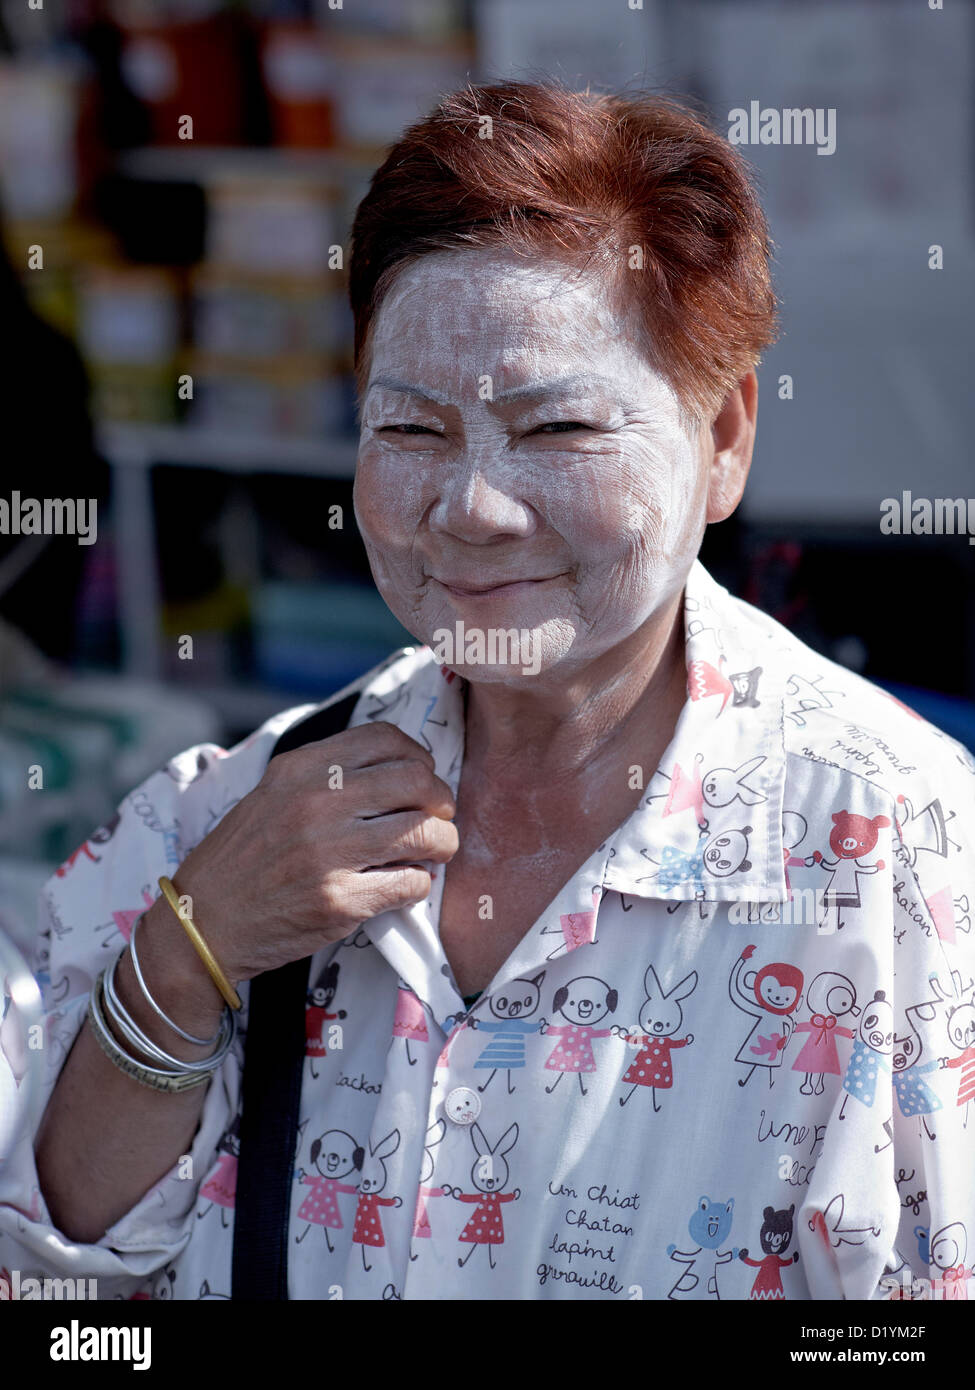 Thai-Frau mit Sonne im Gesicht Puder zu schützen. S. E. Asien Thailand  Stockfotografie - Alamy